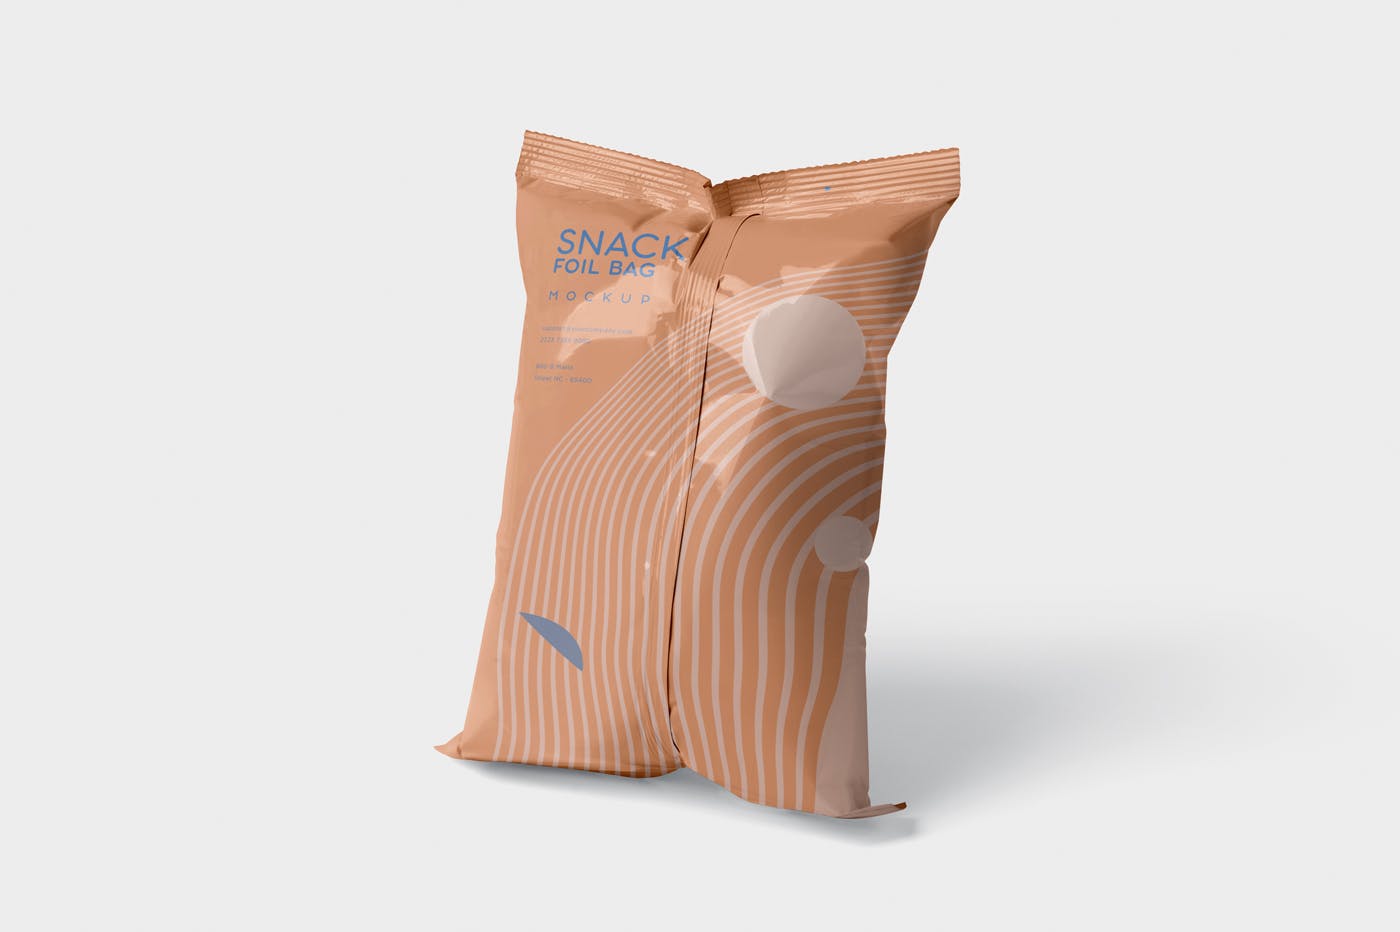 小吃零食铝箔袋/塑料包装袋设计图蚂蚁素材精选 Snack Foil Bag Mockup – Plastic插图(2)